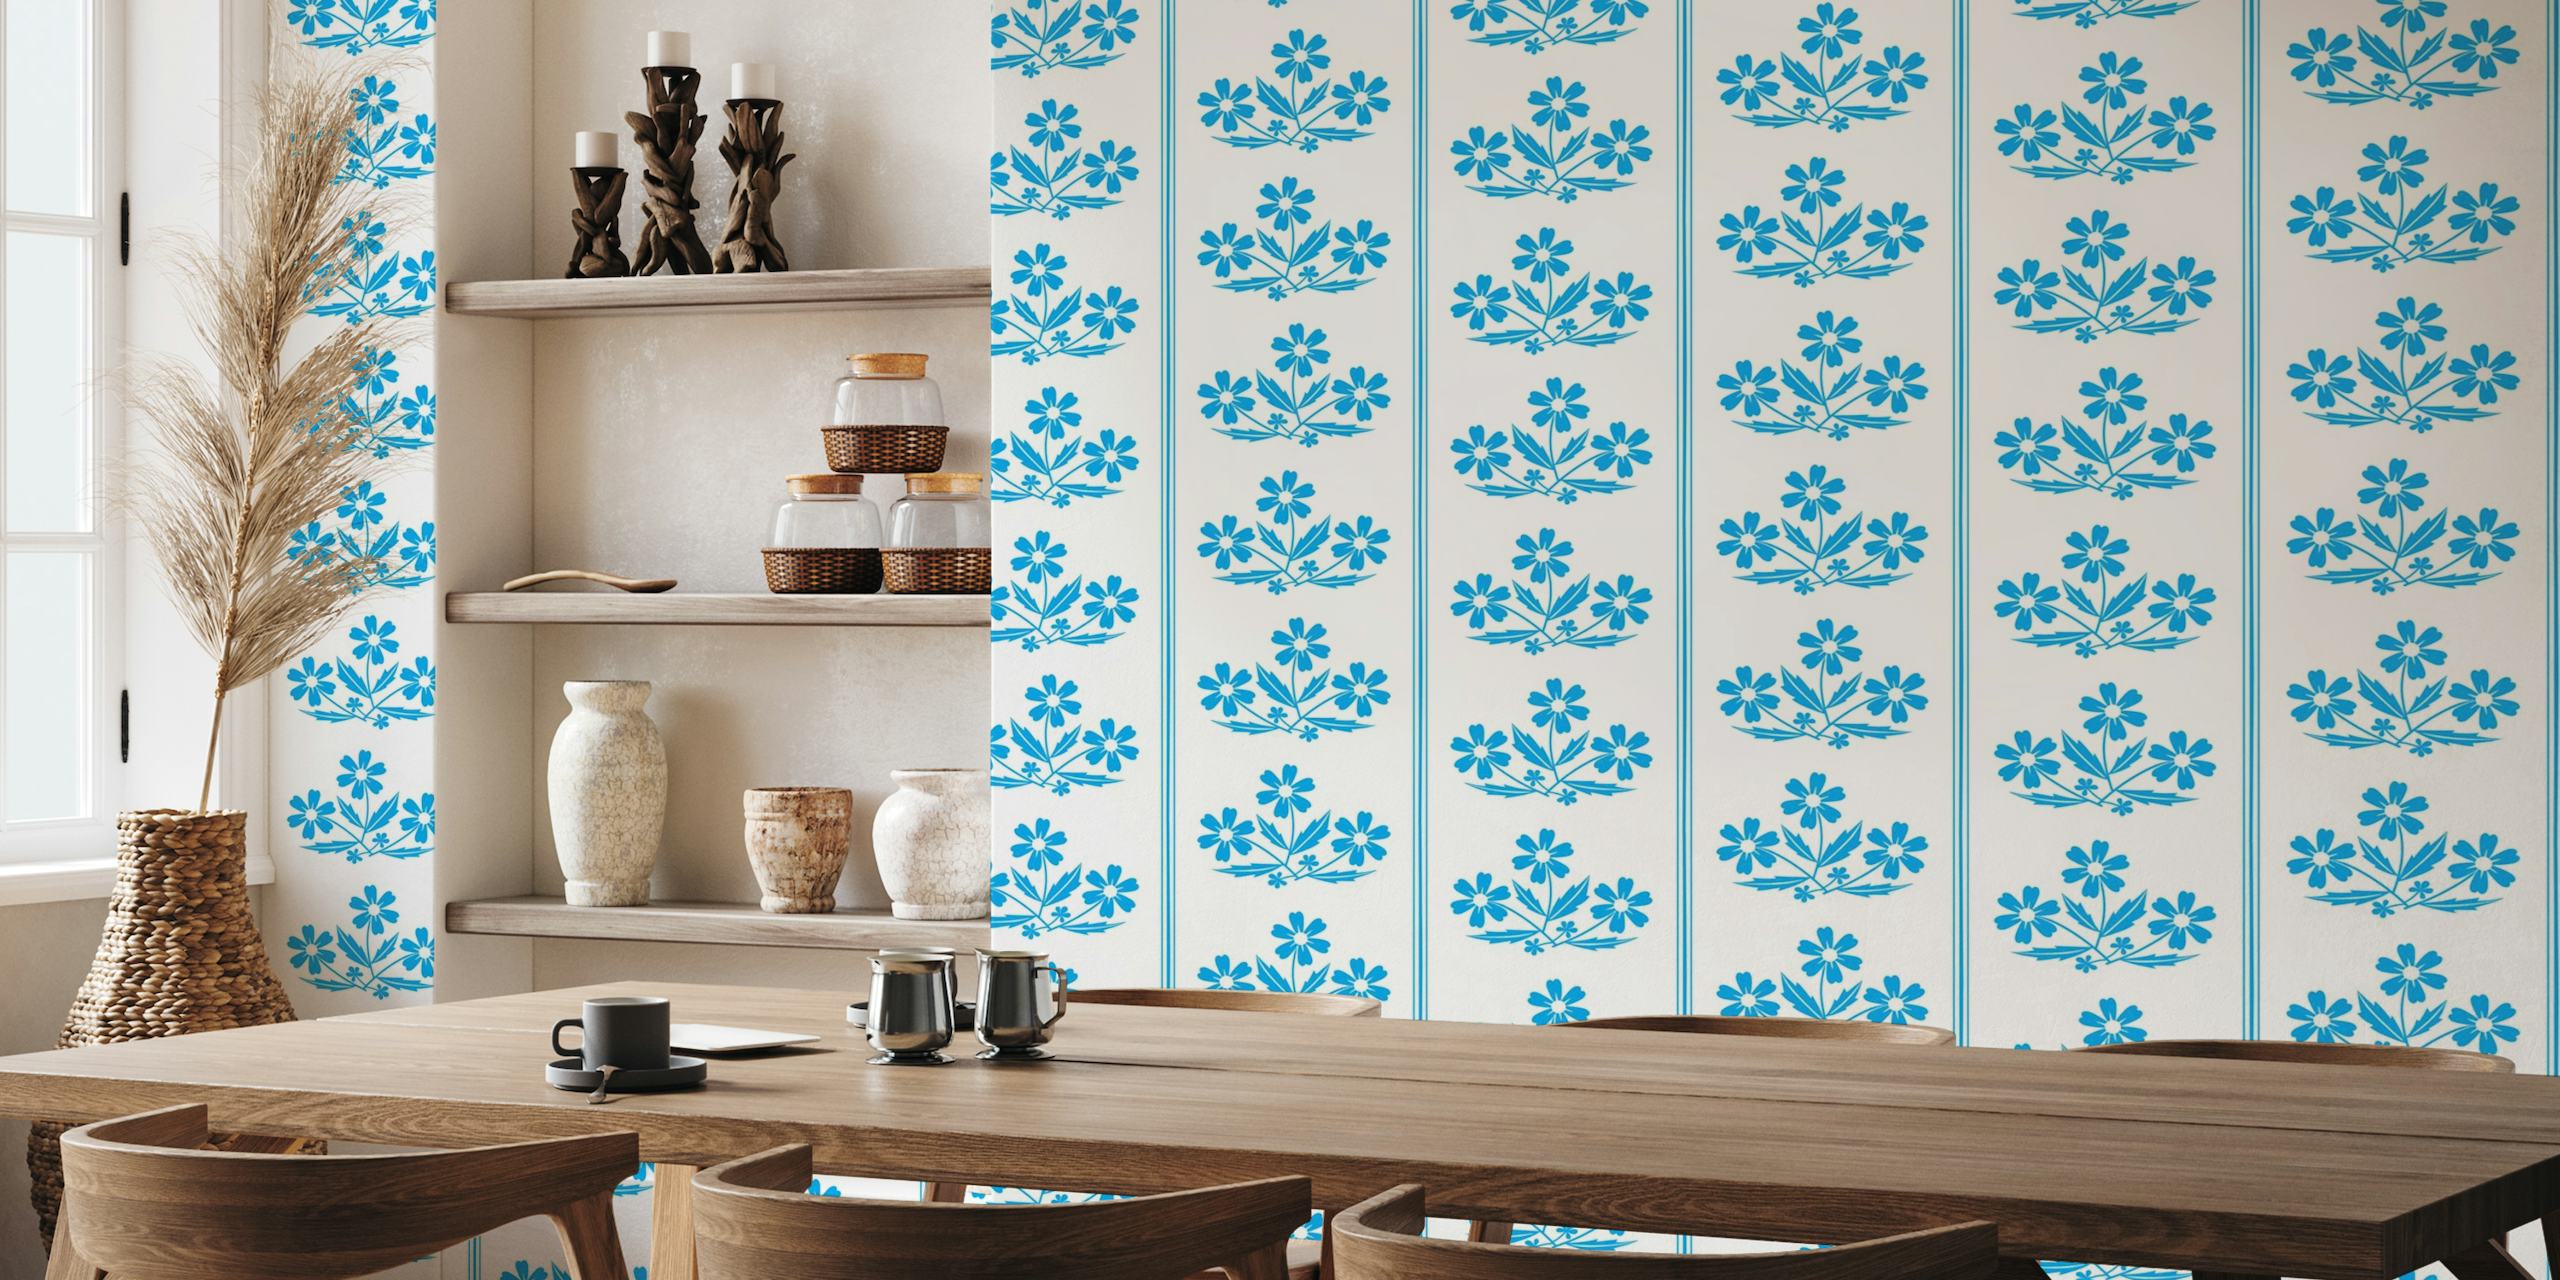 Fotomural de pared con estampado floral de aciano azul vintage con rayas sobre un fondo blanco.